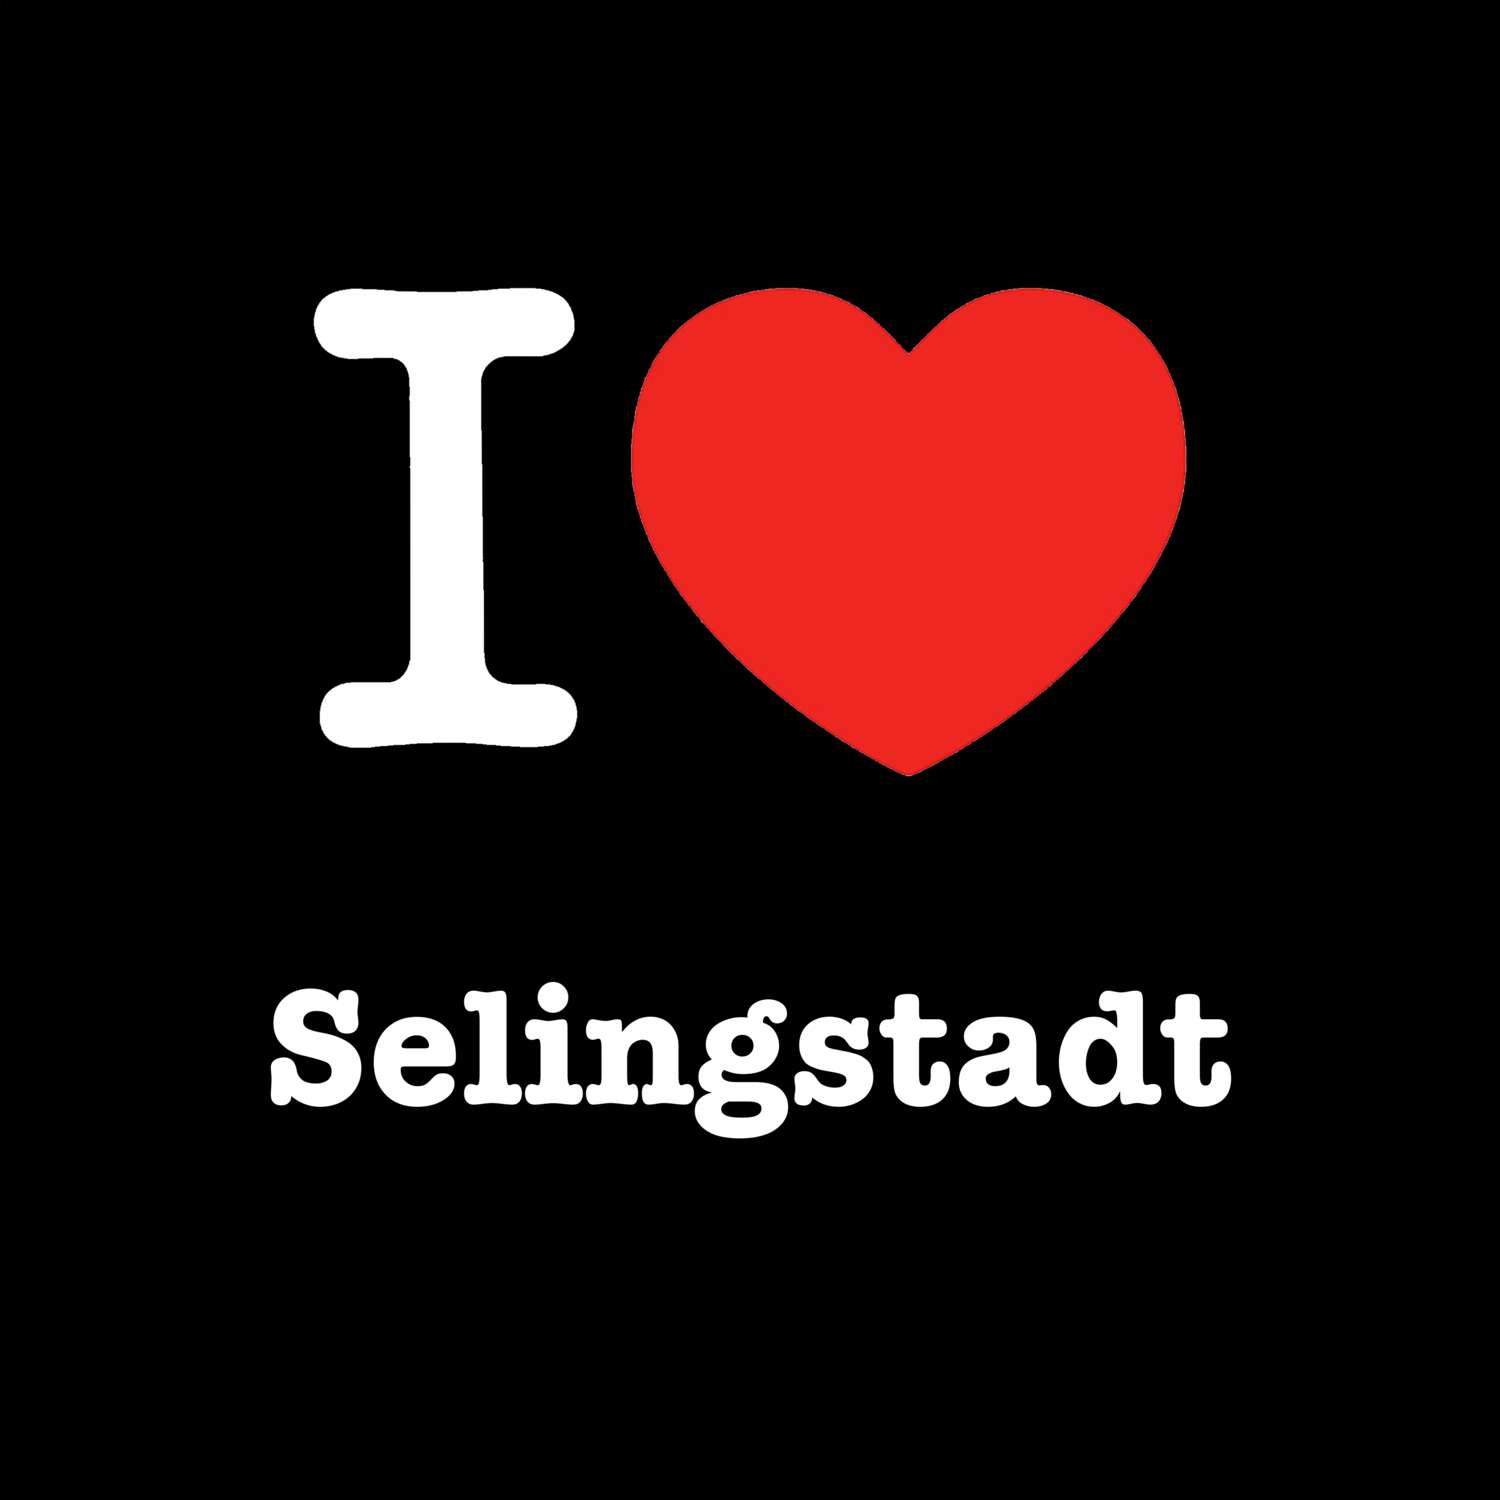 Selingstadt T-Shirt »I love«